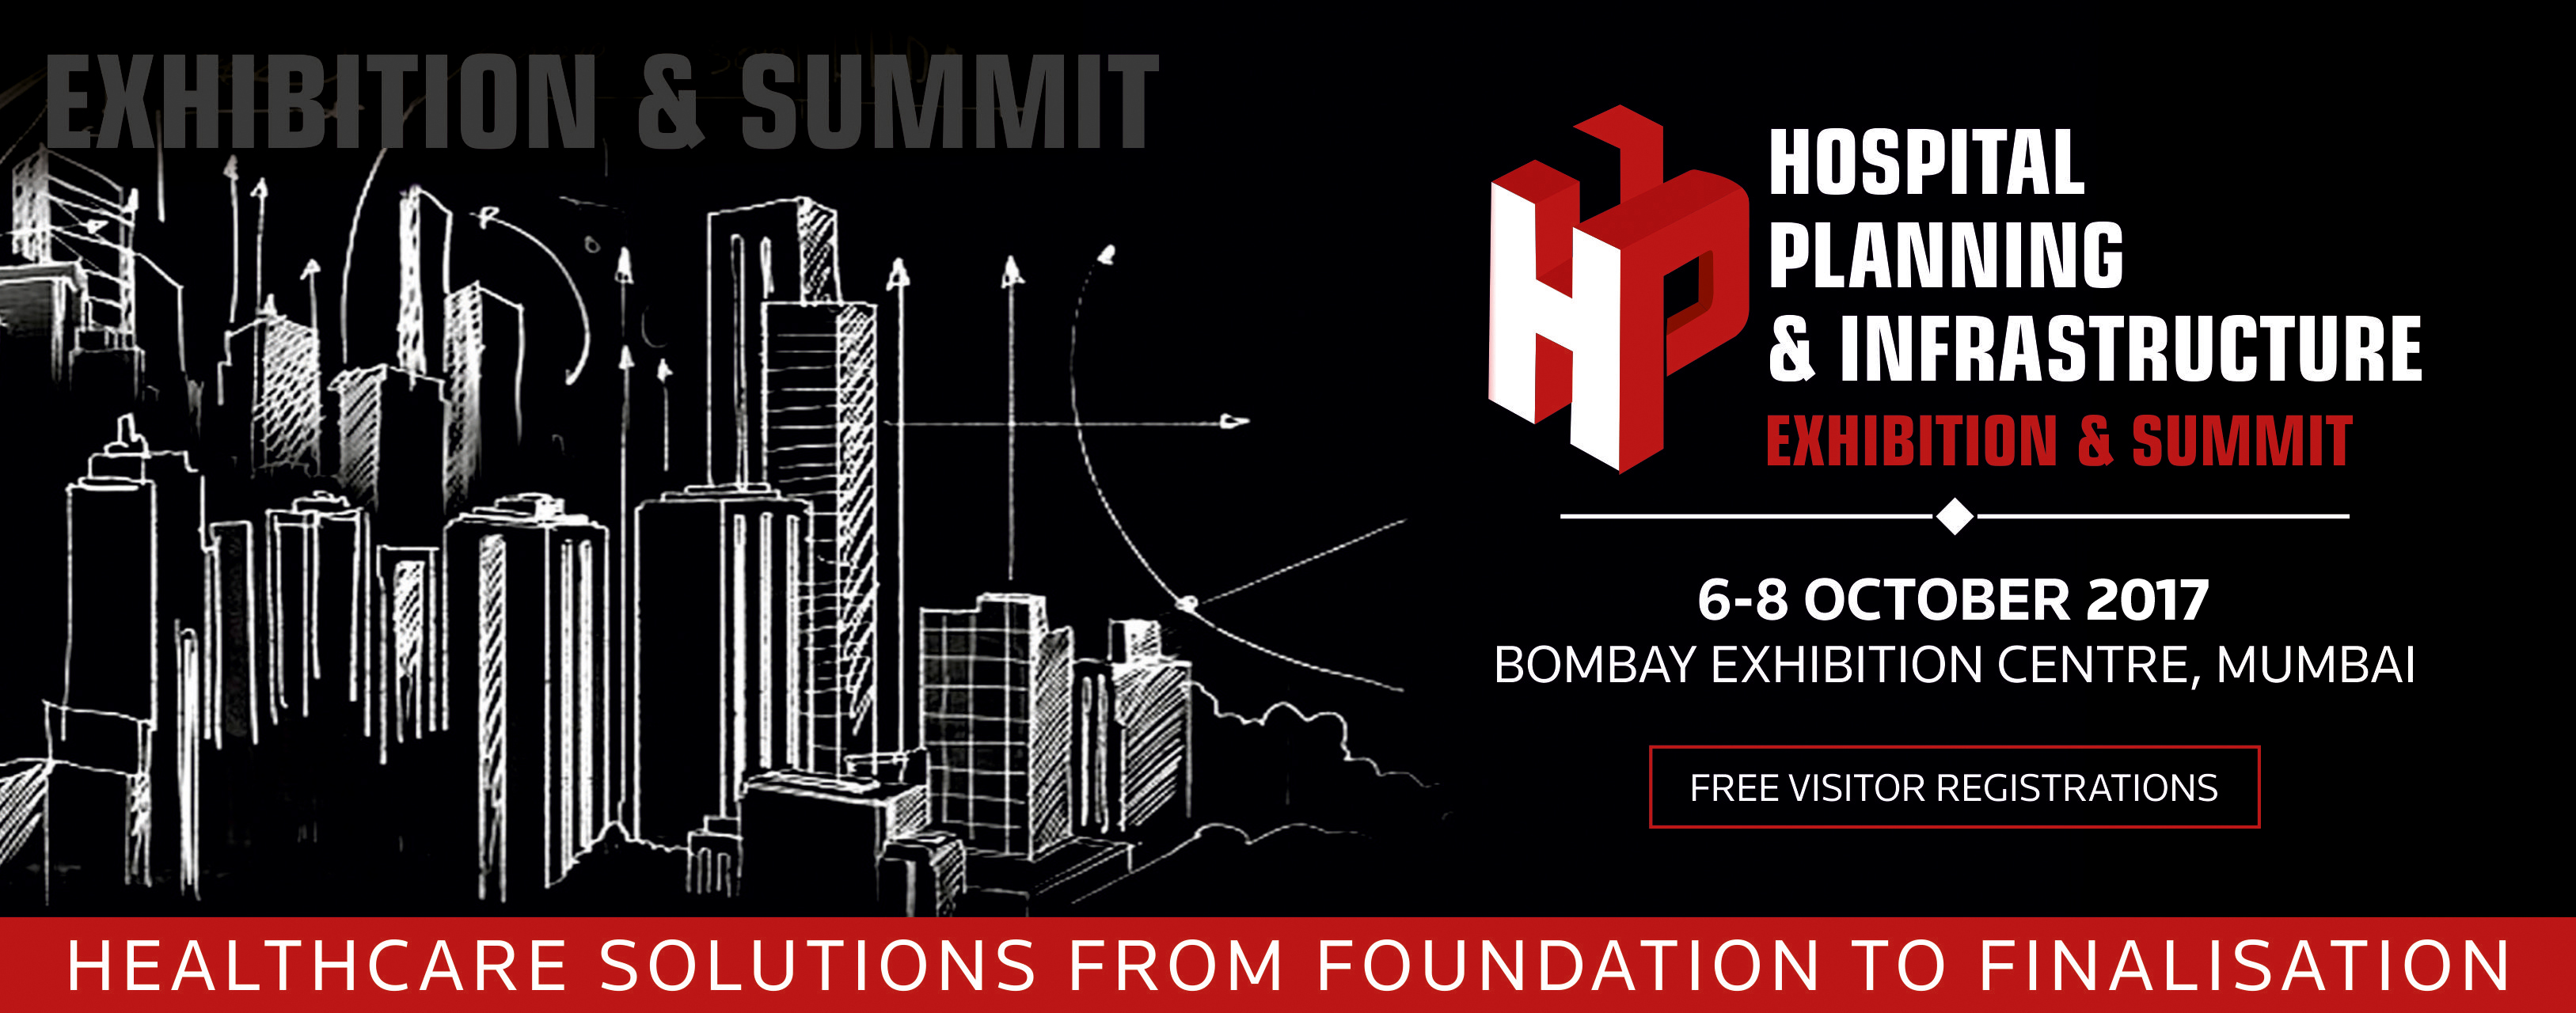 Hospital Planning and Infrastructure (H.P.I) Exhibition & Summit, Mumbai, Maharashtra, India